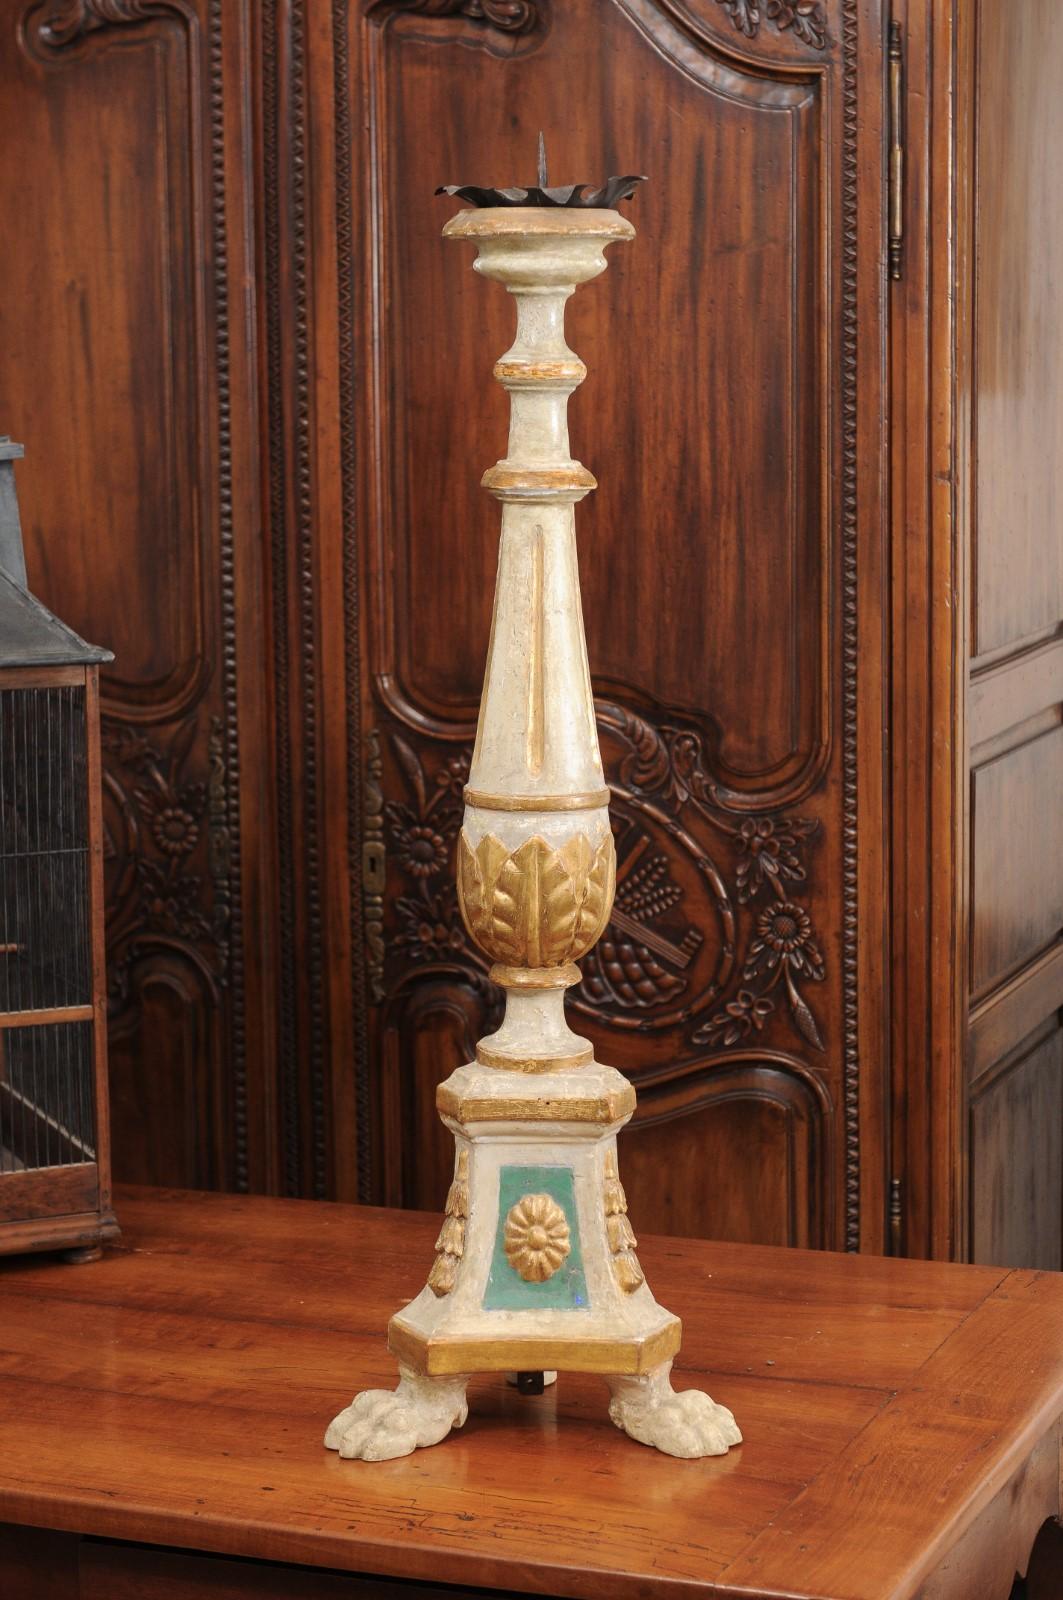 Bemalter und vergoldeter Kerzenleuchter aus der Toskana aus dem 18. Jahrhundert mit kannelierten Motiven und Akanthusblättern. Dieser toskanische Kerzenhalter, der im 18. Jahrhundert in Mittelitalien hergestellt wurde, besteht aus einer bemalten,